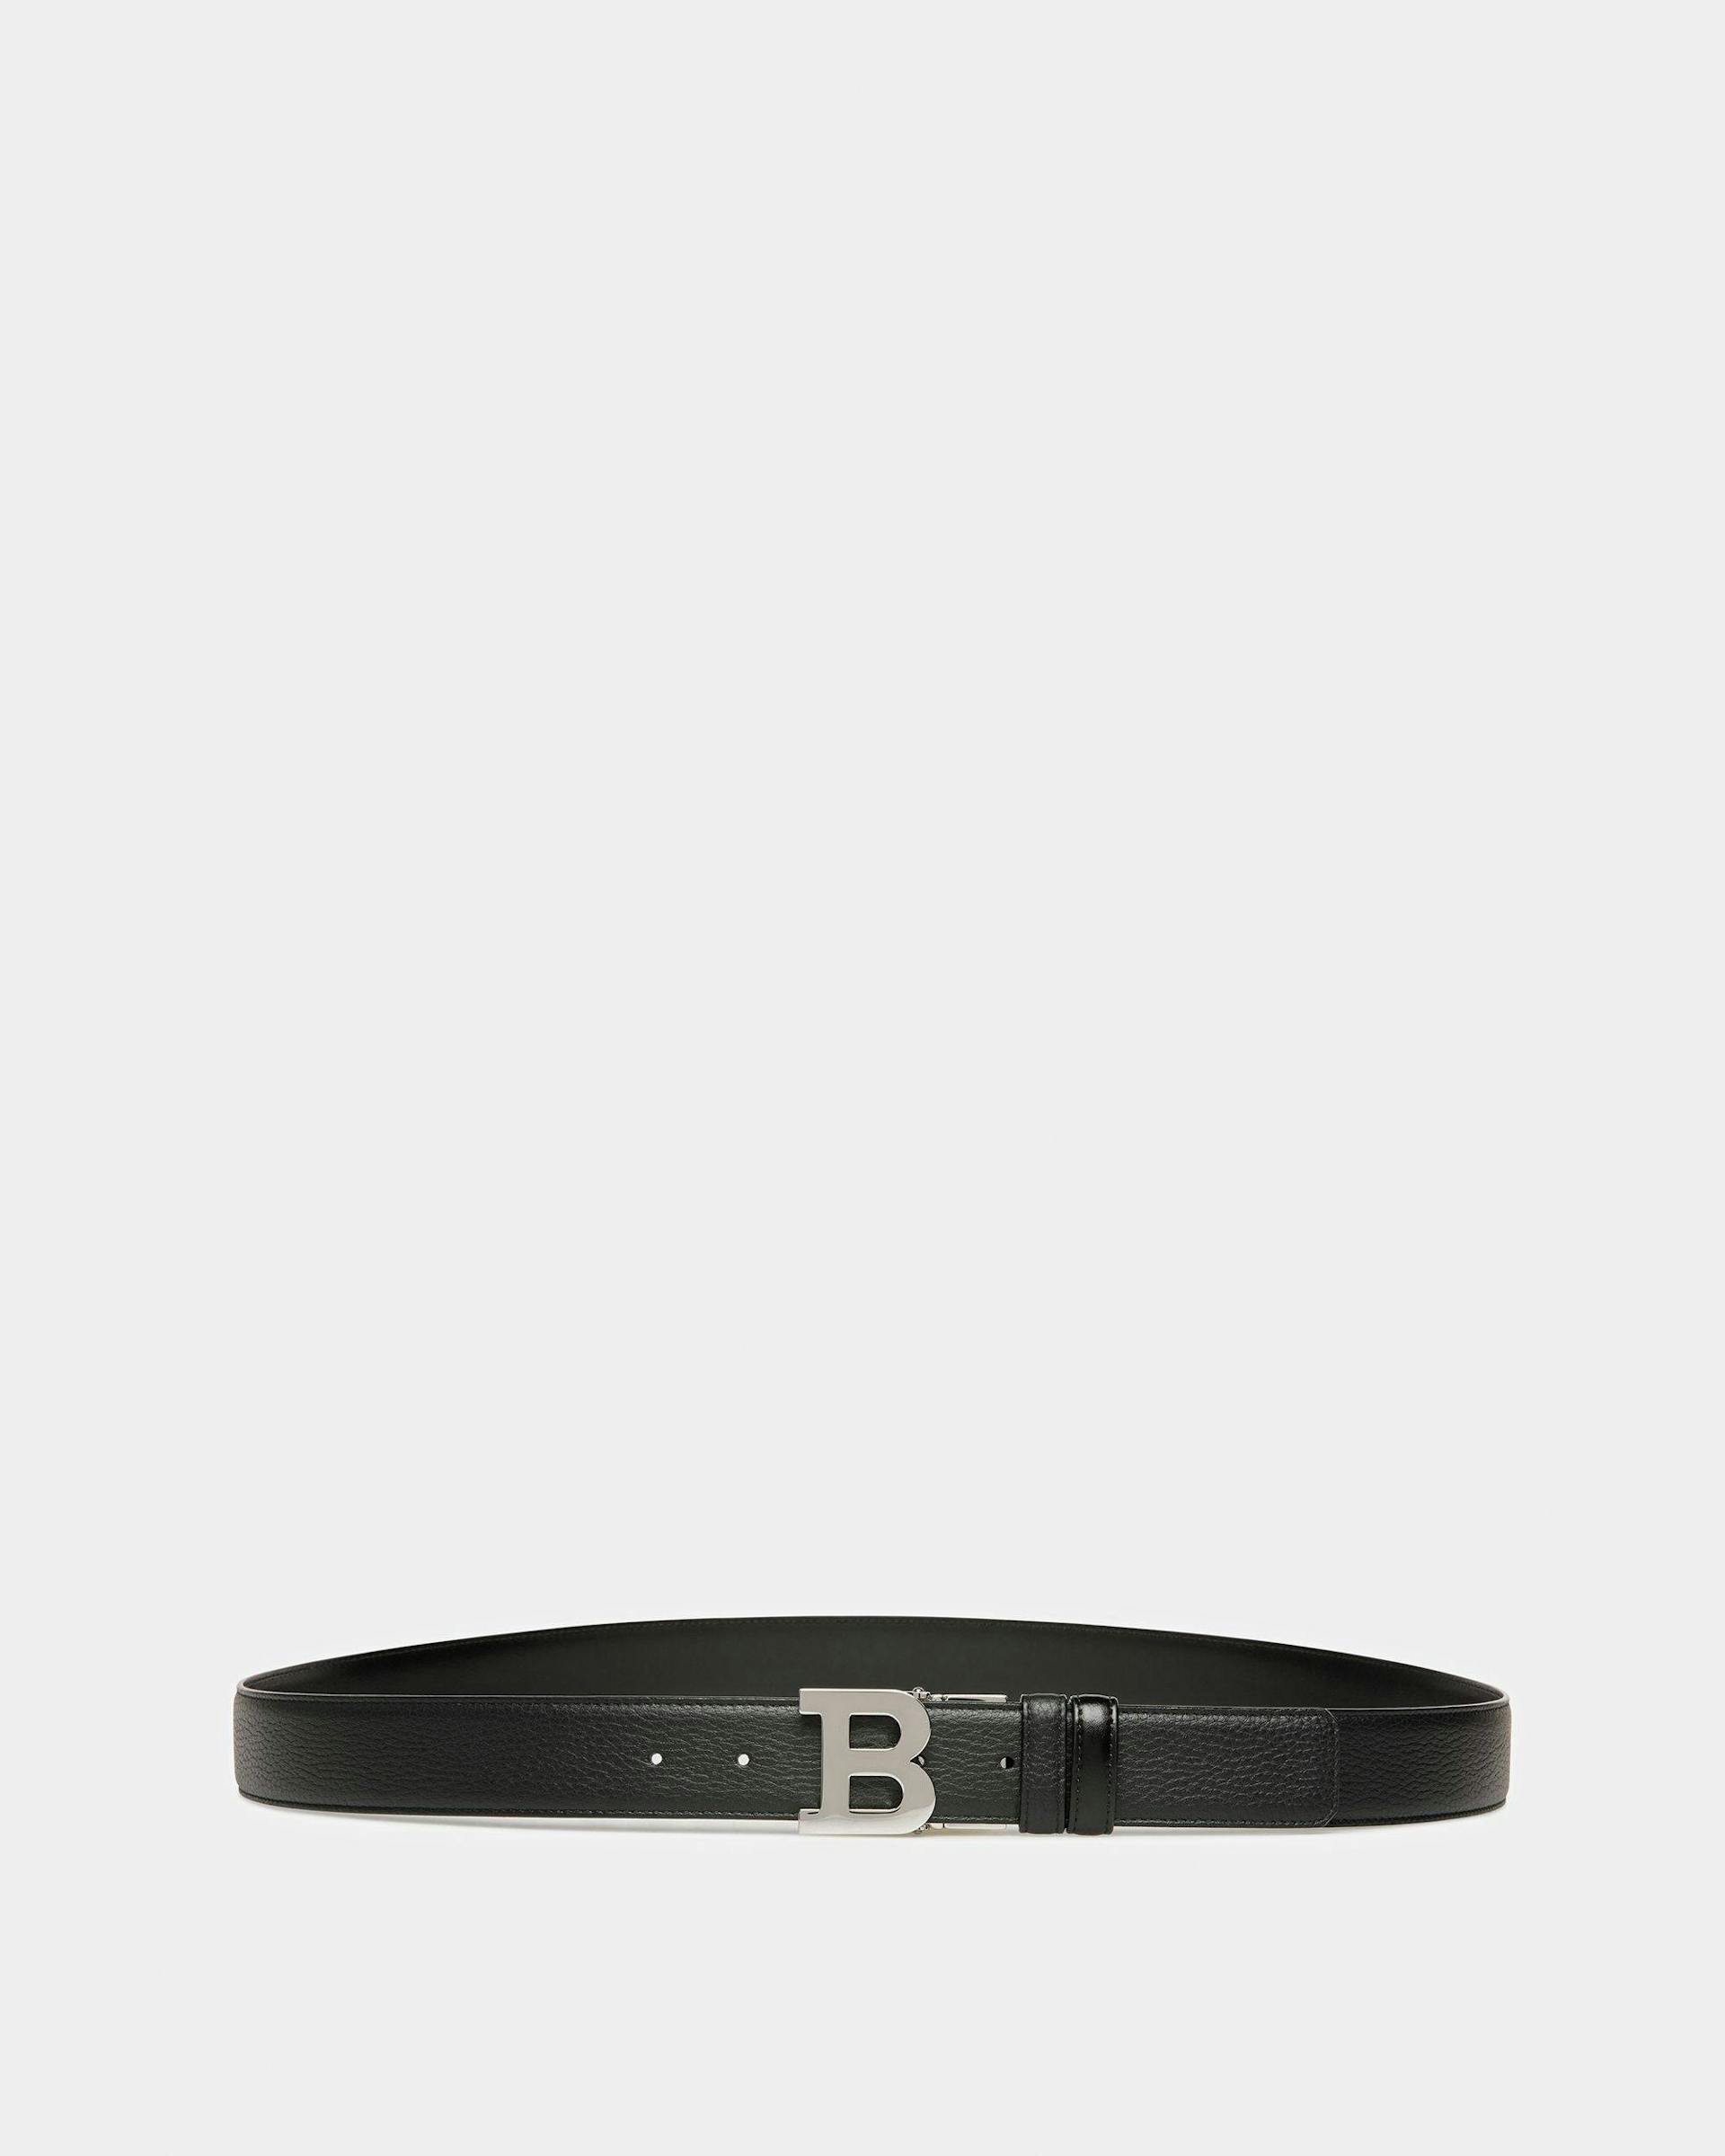 B Buckle Leather Belt In Black - Men's - Bally - 01